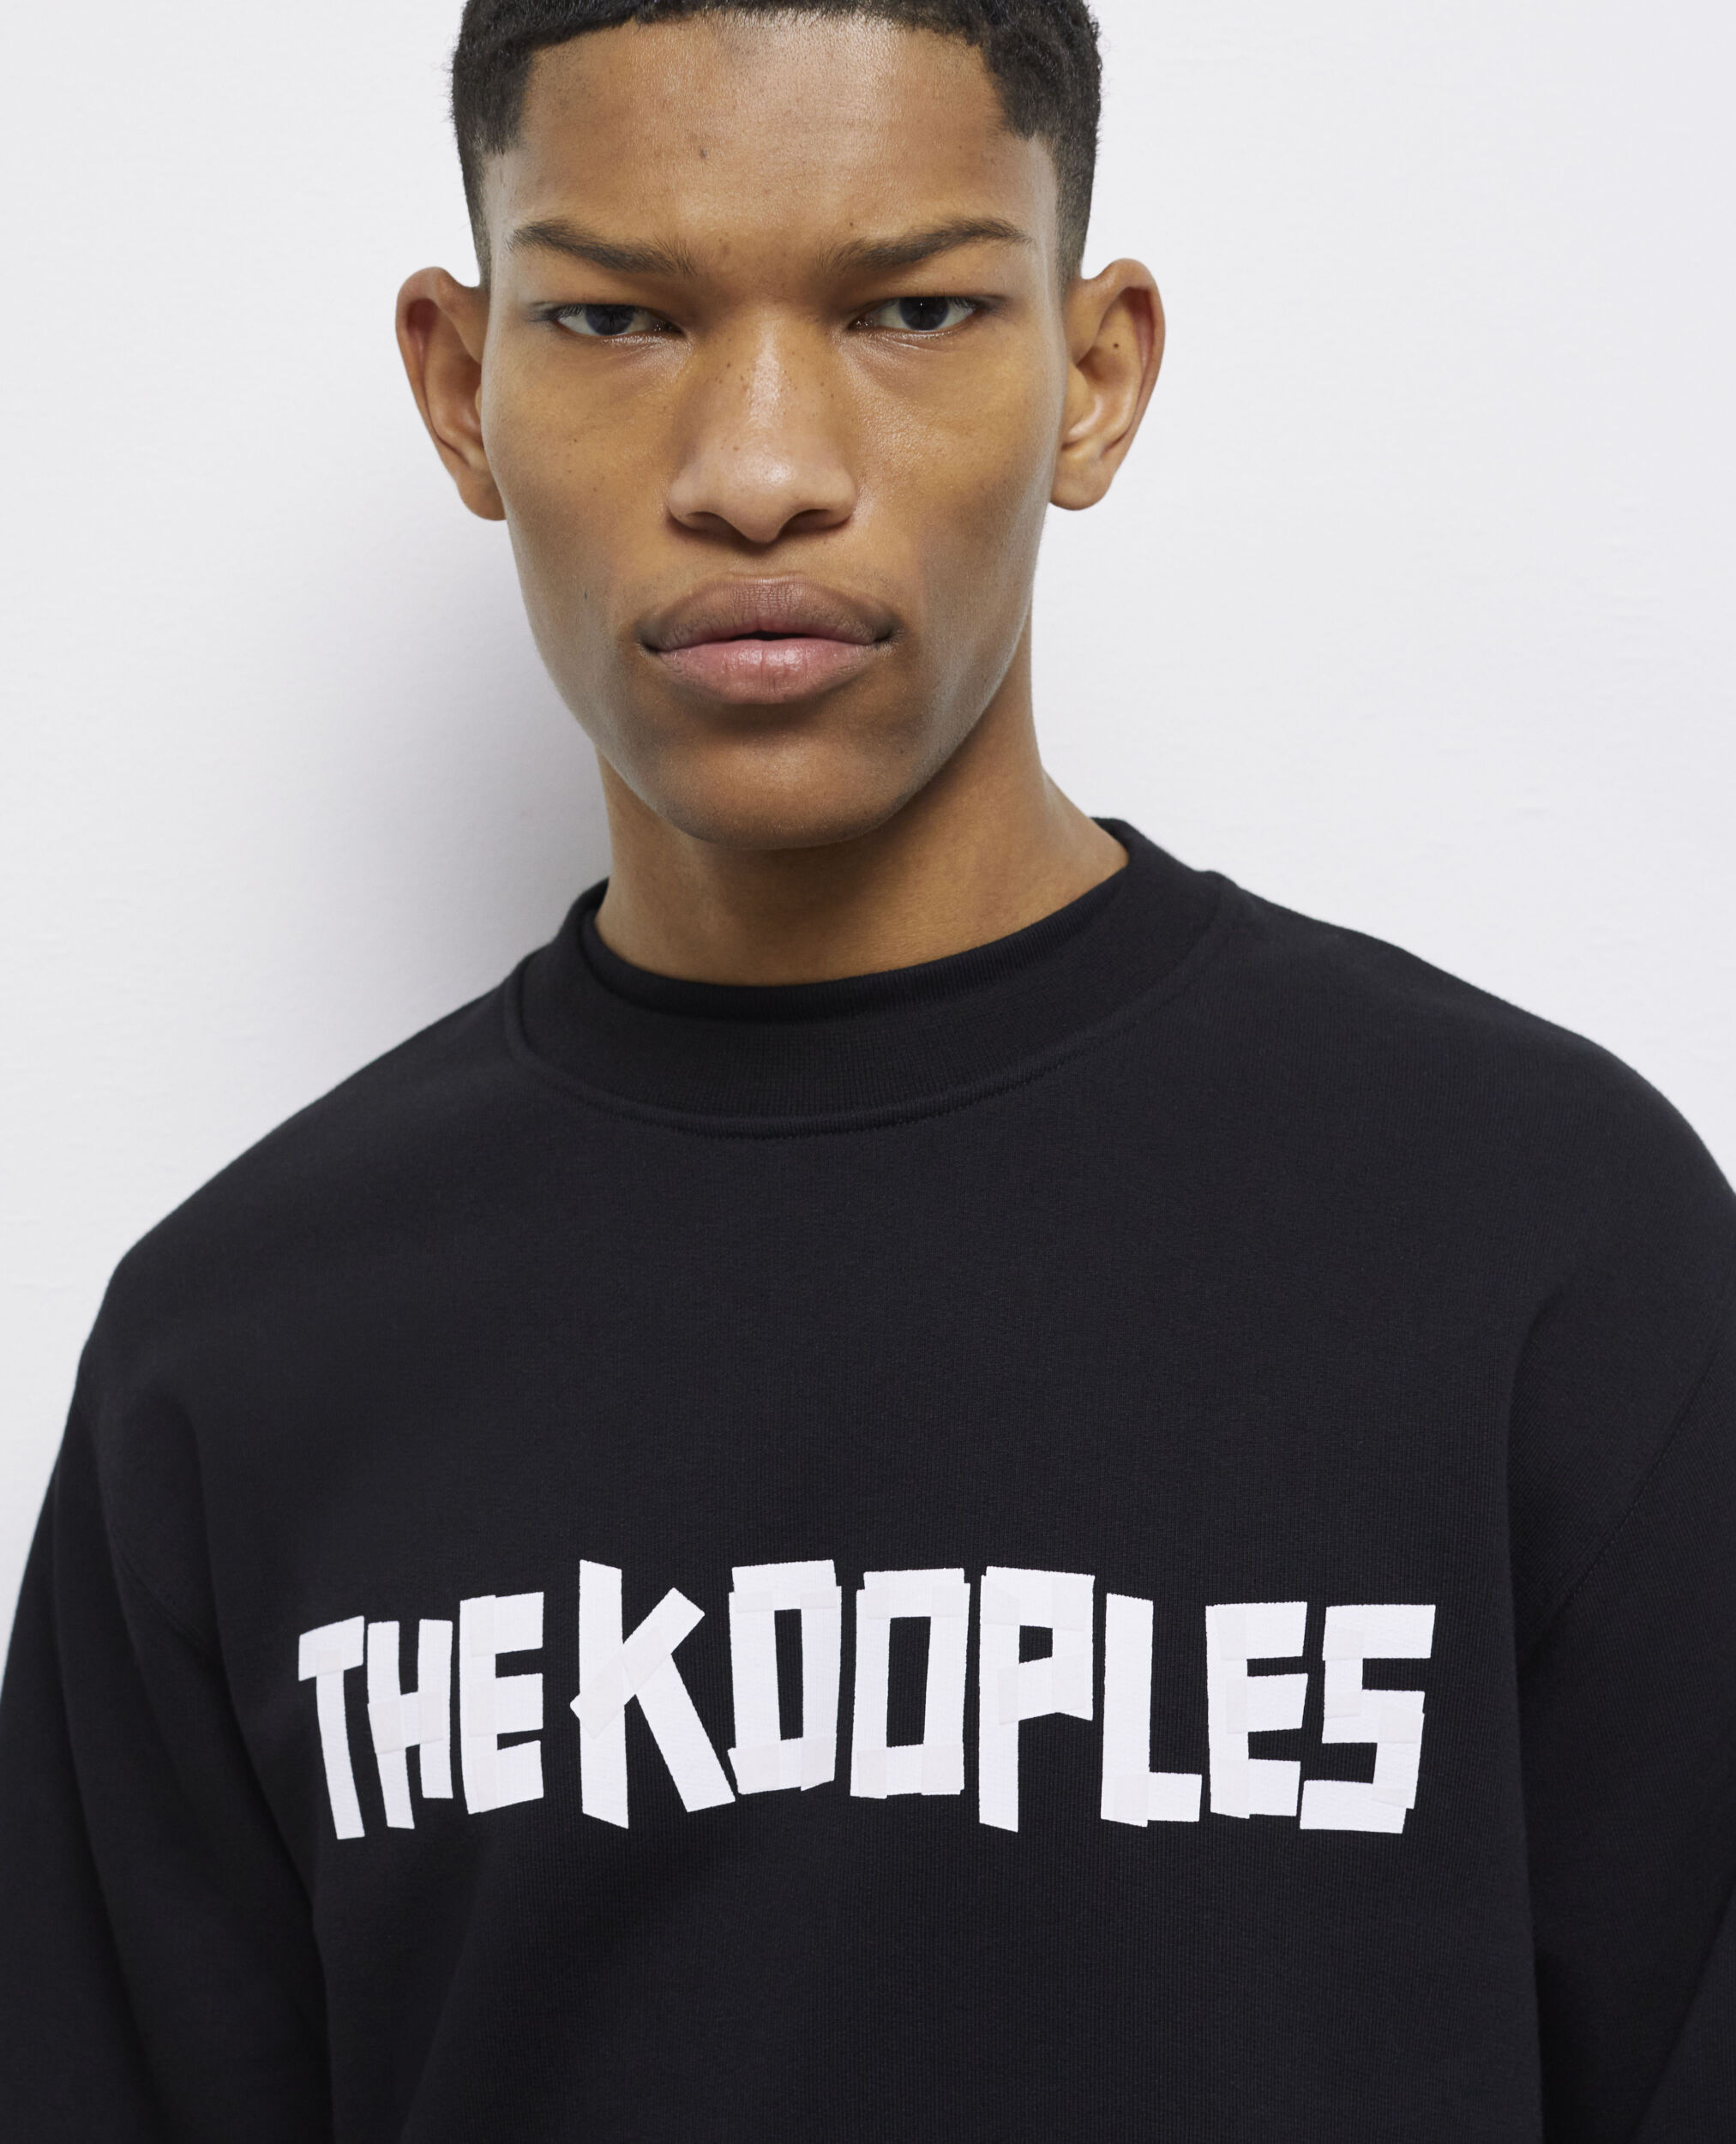 The Kooples black logo sweatshirt, BLACK, hi-res image number null